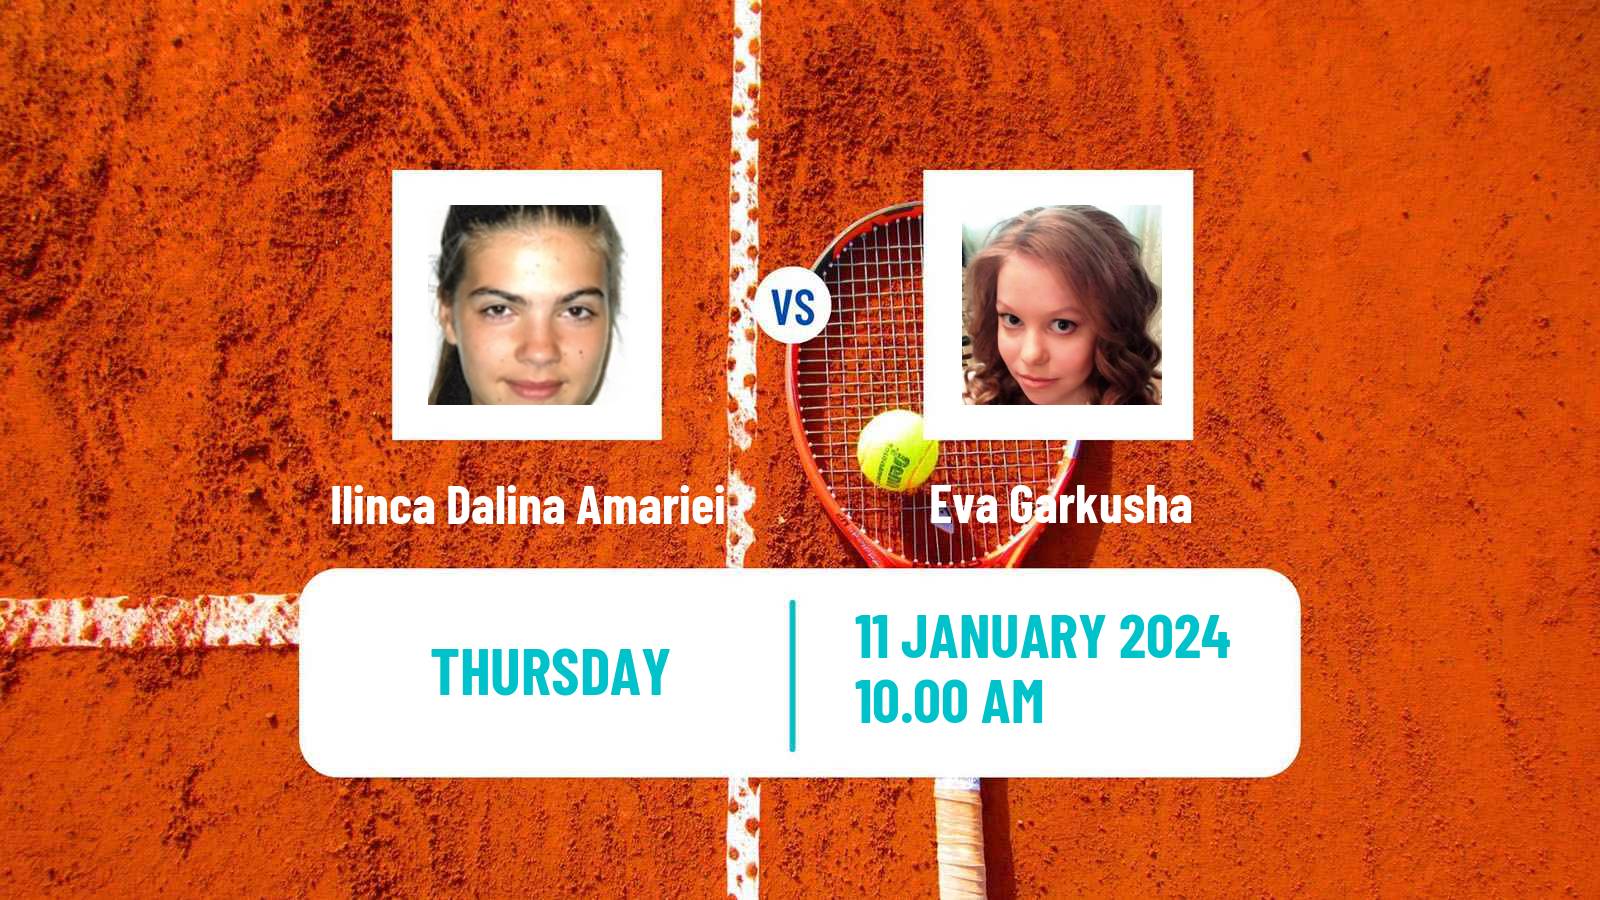 Tennis ITF W35 Antalya Women Ilinca Dalina Amariei - Eva Garkusha